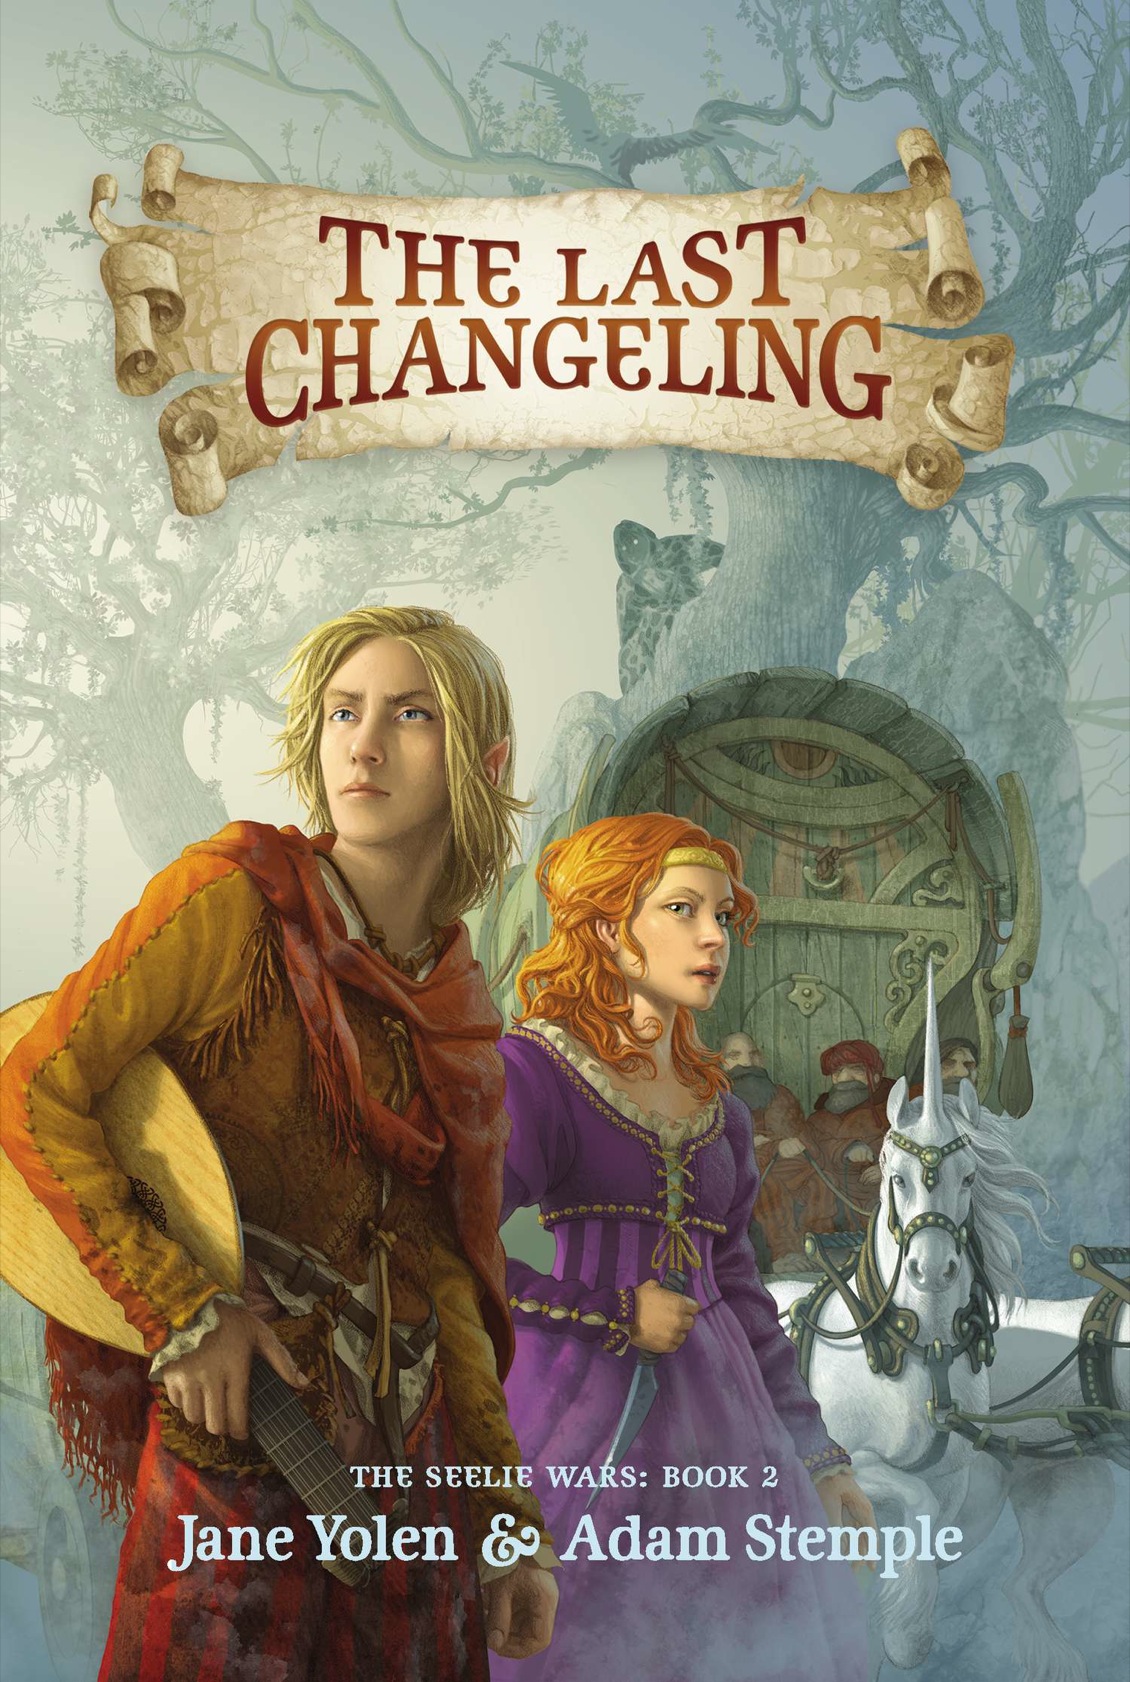 The Last Changeling (2014) by Jane Yolen